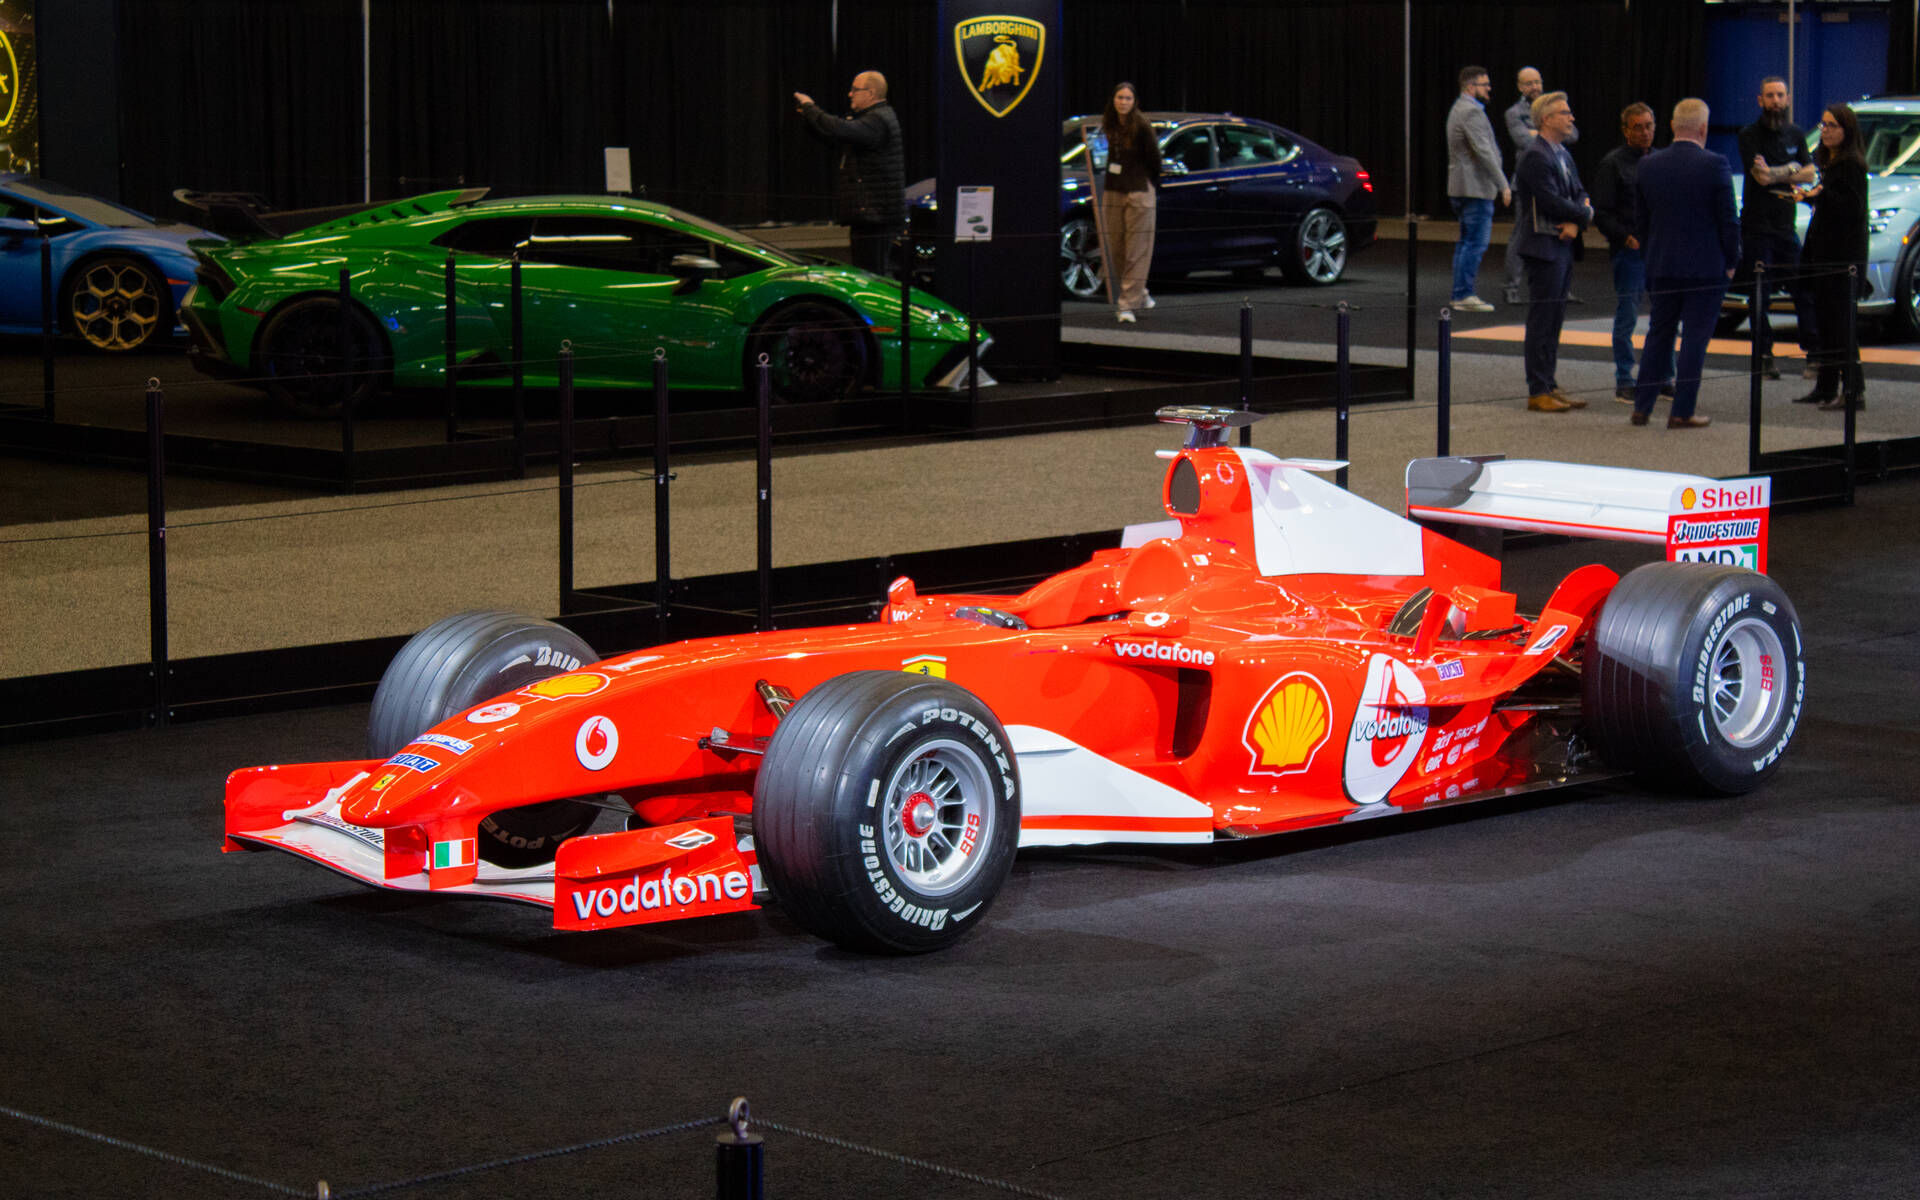 <p>2004 Formula 1 car driven by Michael Schumacher</p>